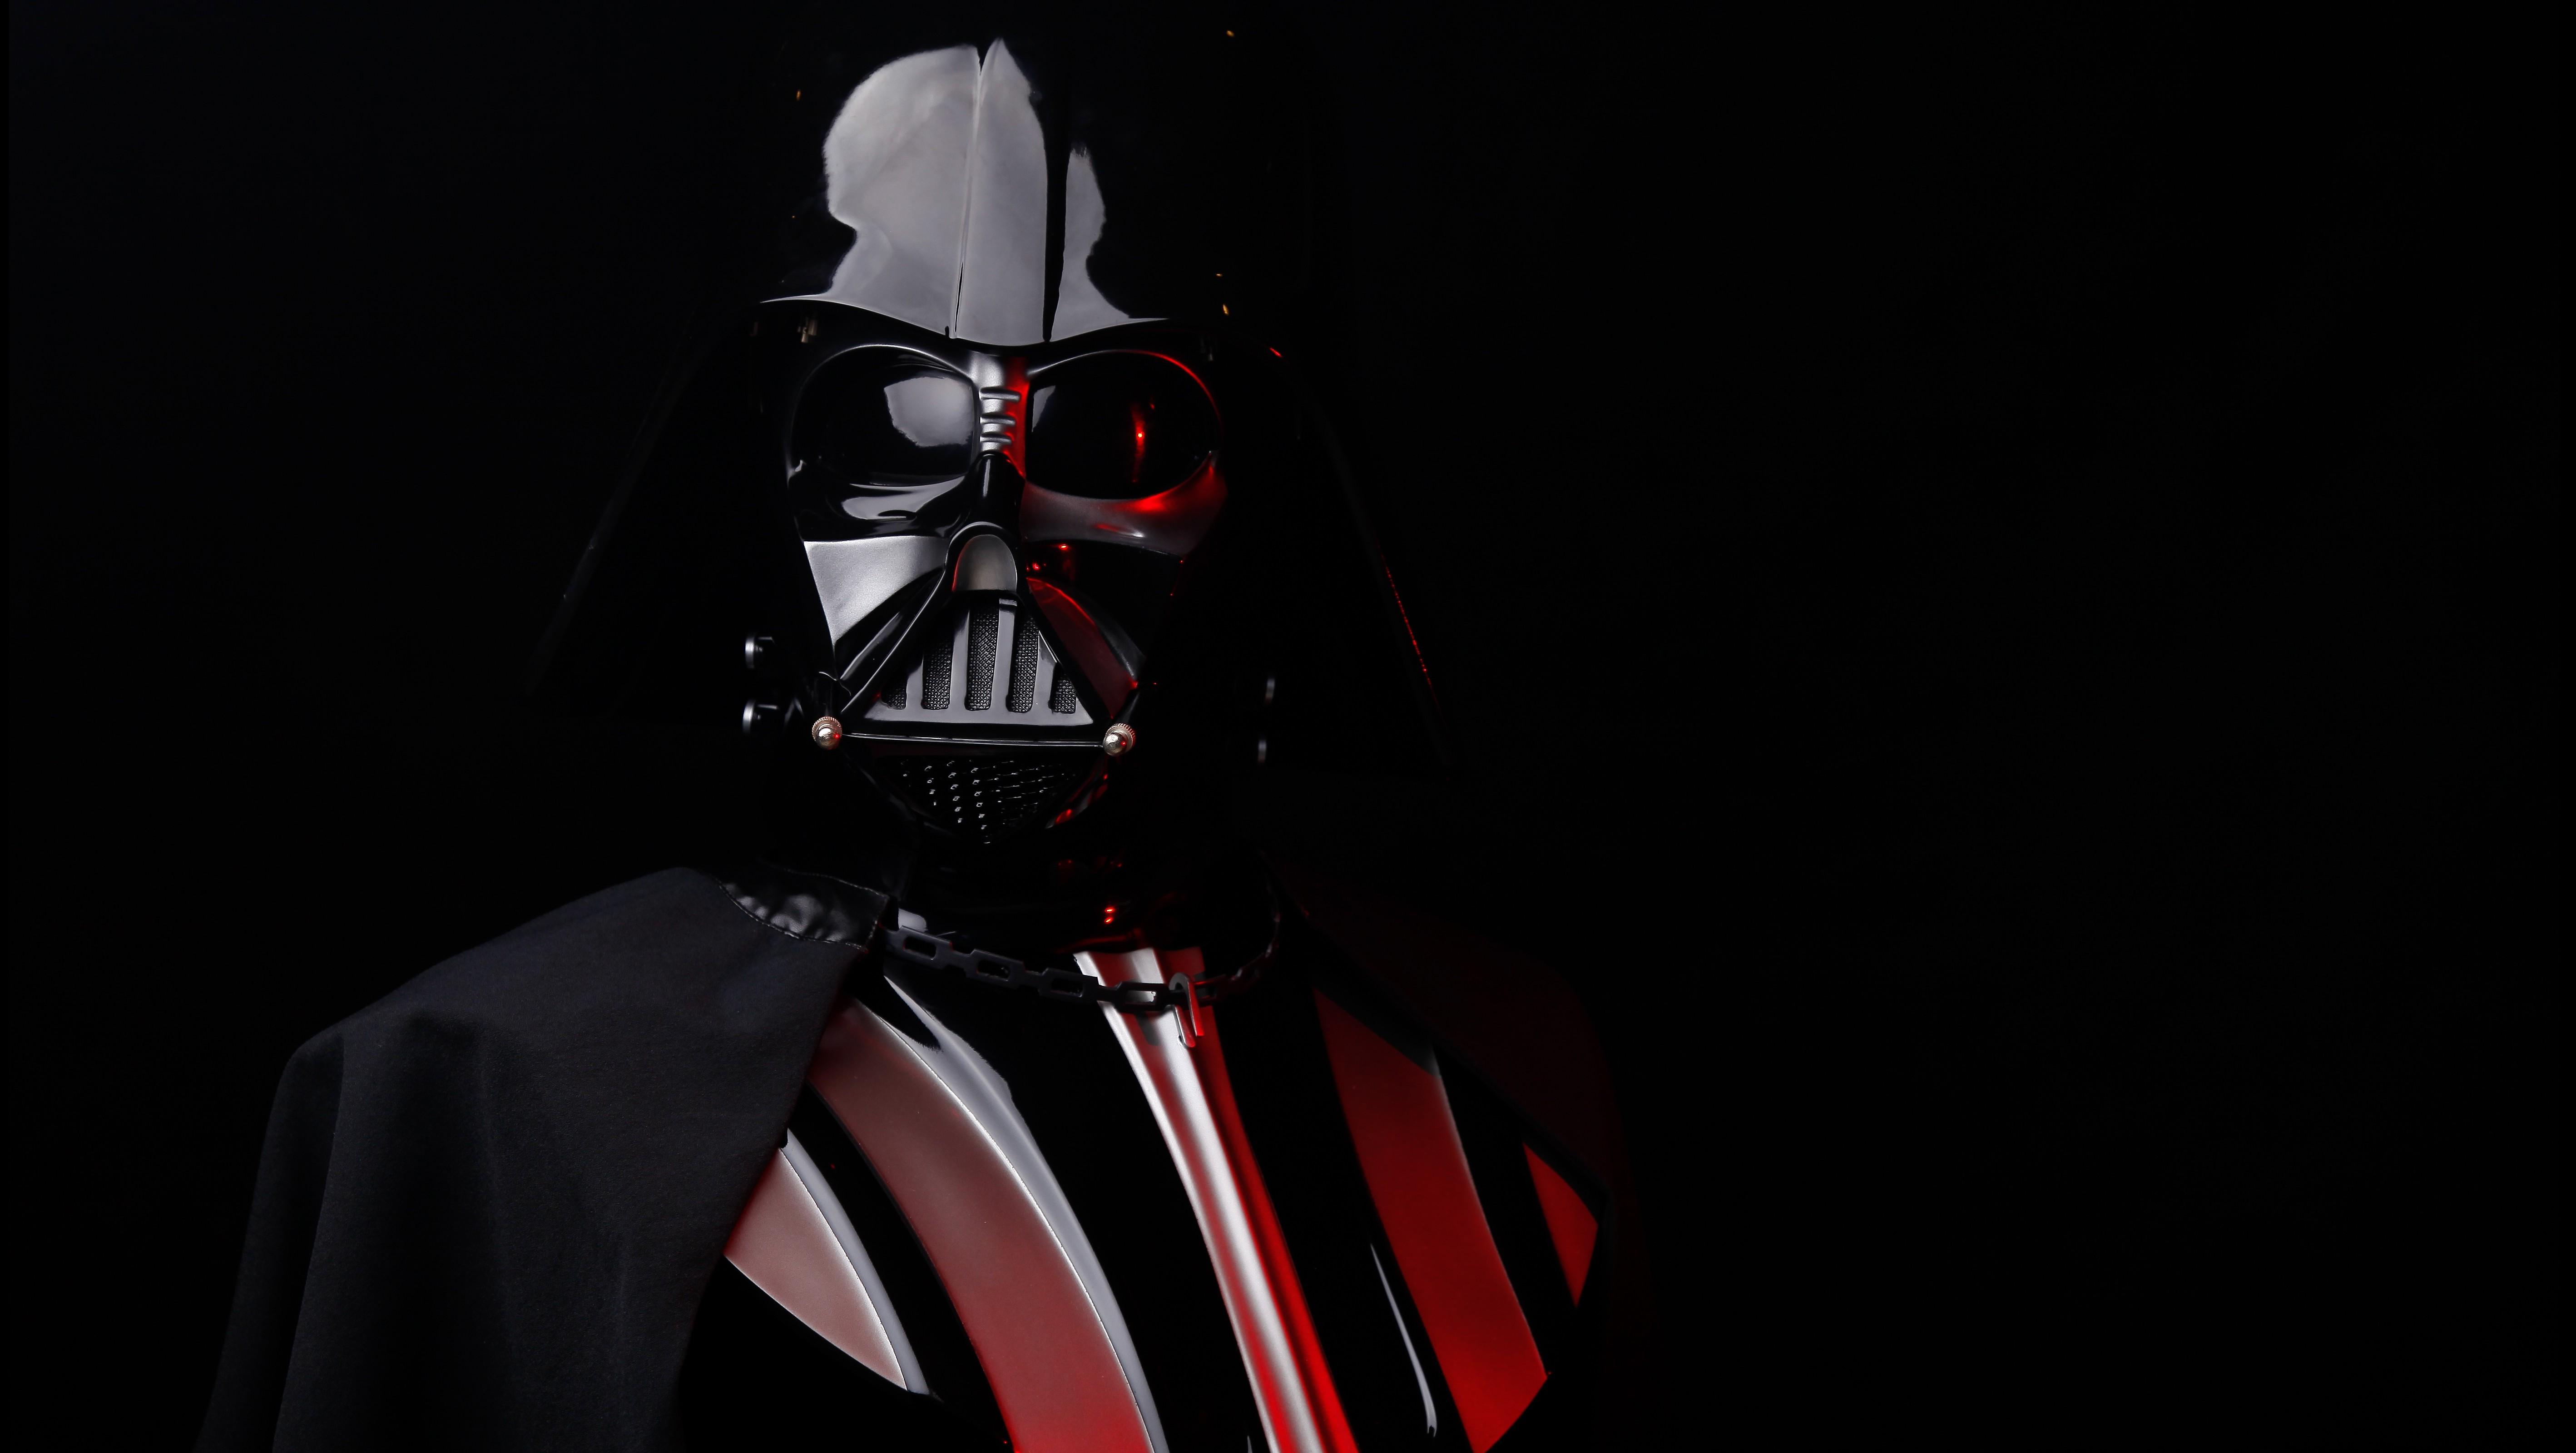 Star Wars Darth Vader Wallpaper Hd